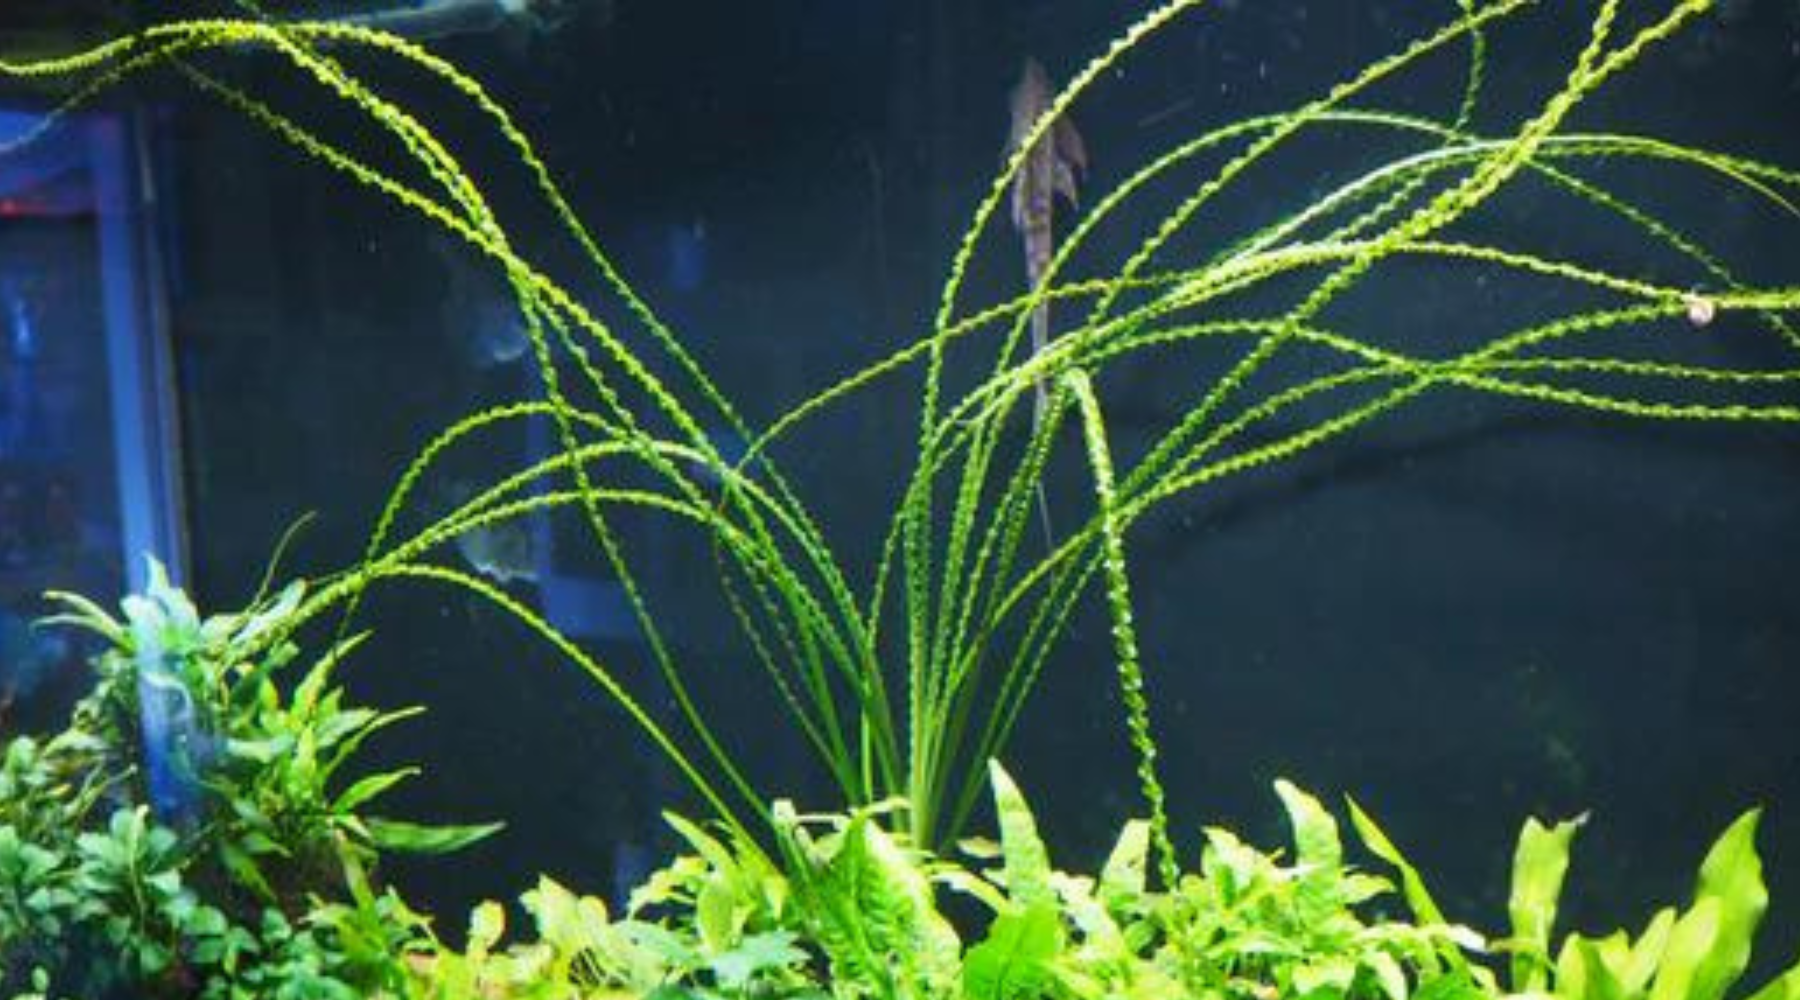 Crinum calamistratum aquatic plant 